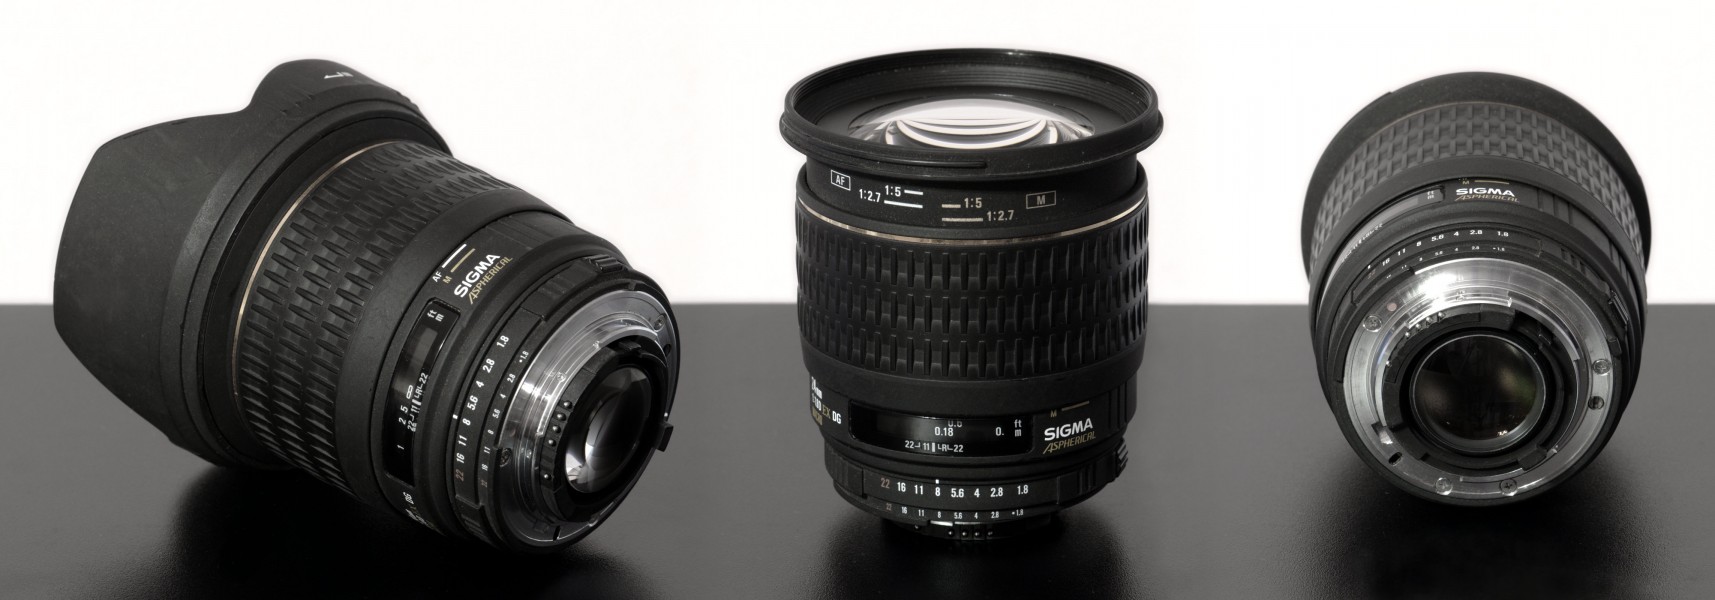 24mm-Fixed-focal-SLR-lens